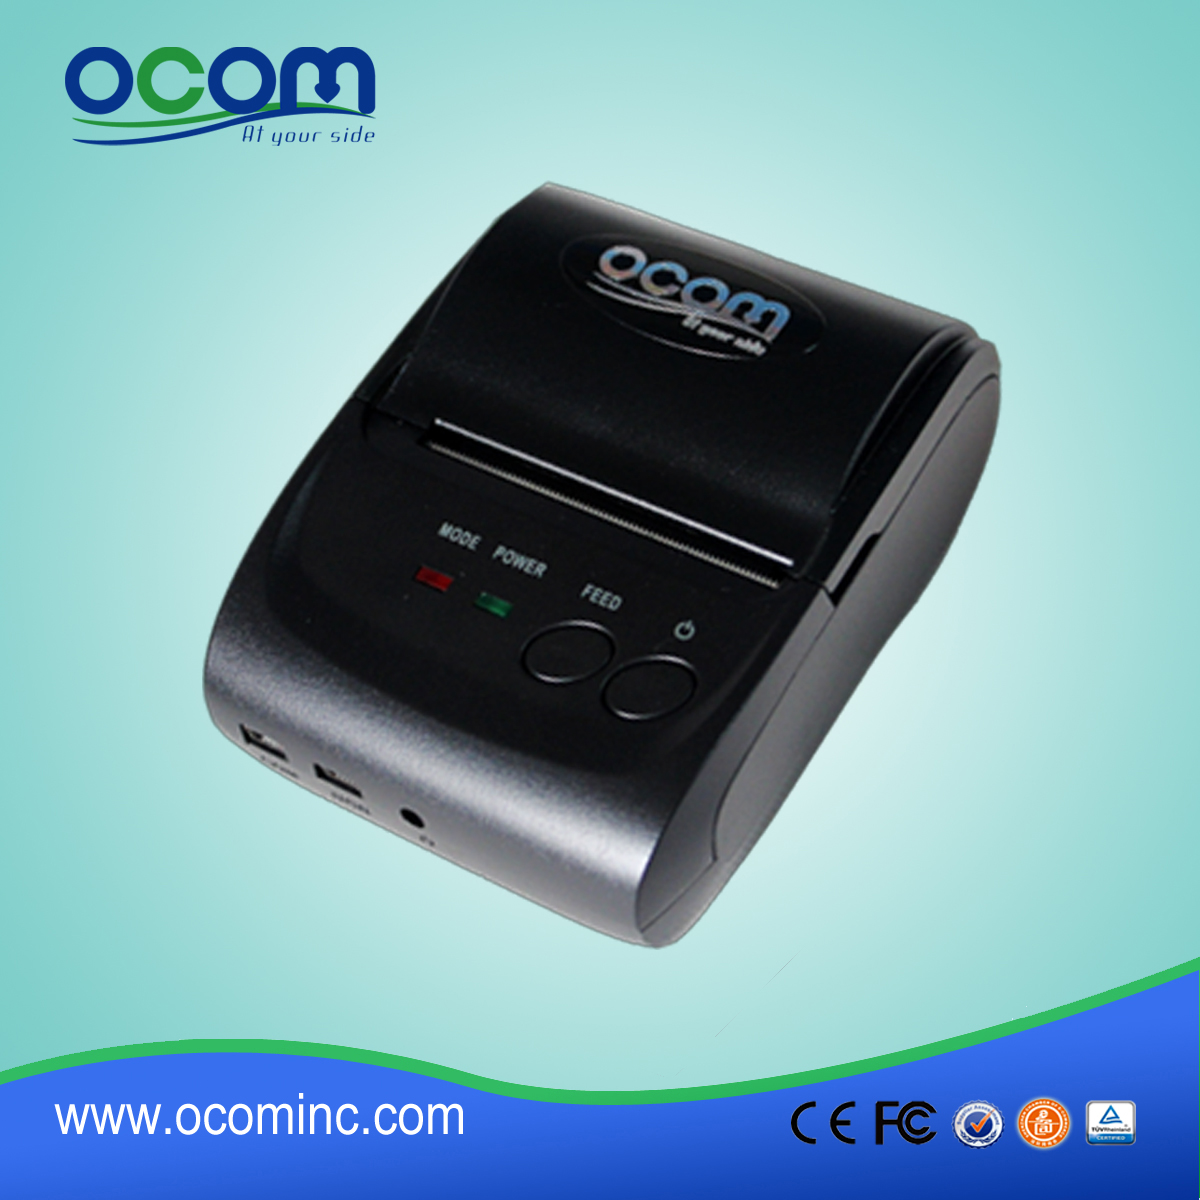 OCPP-M05: stampante affidabile stampante termica di posizione androide, stampante termica qr code